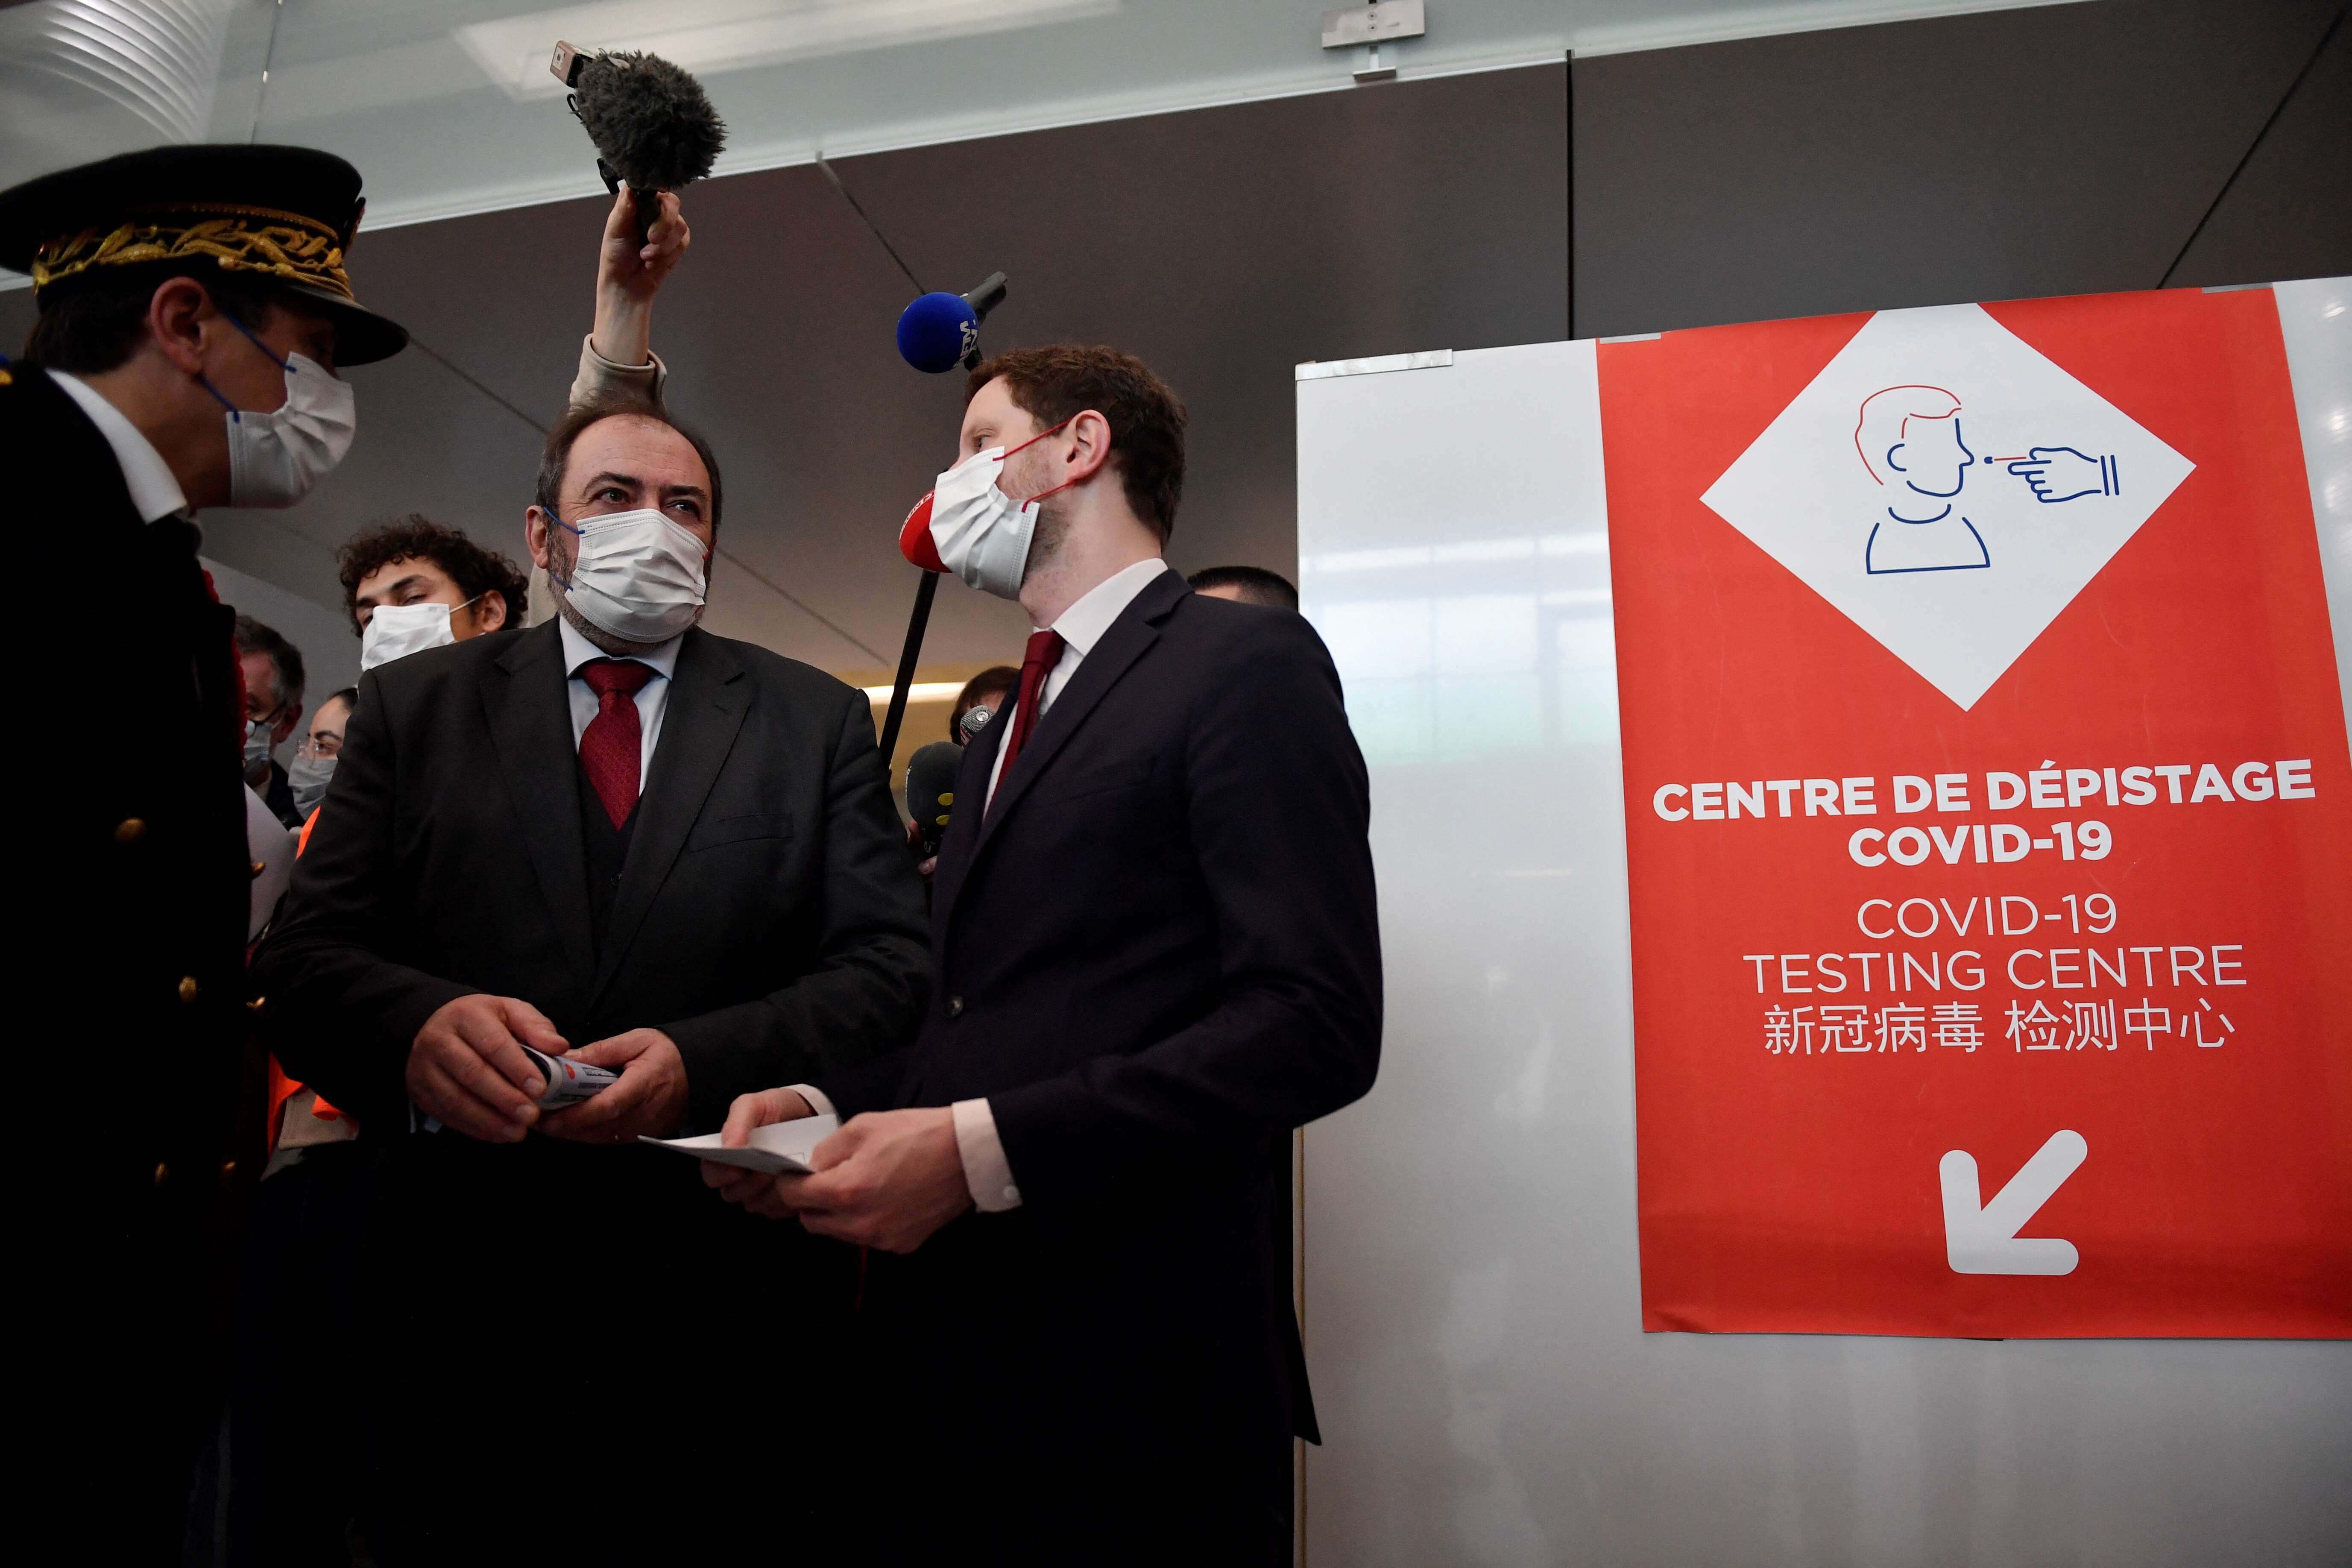 Ce dimanche 1er janvier, le ministre de la Santé François Braun était à l’aéroport de Roissy-Charles de Gaulle où les voyageurs en provenance de Chine sont soumis à des tests de dépistage du Covid-19.